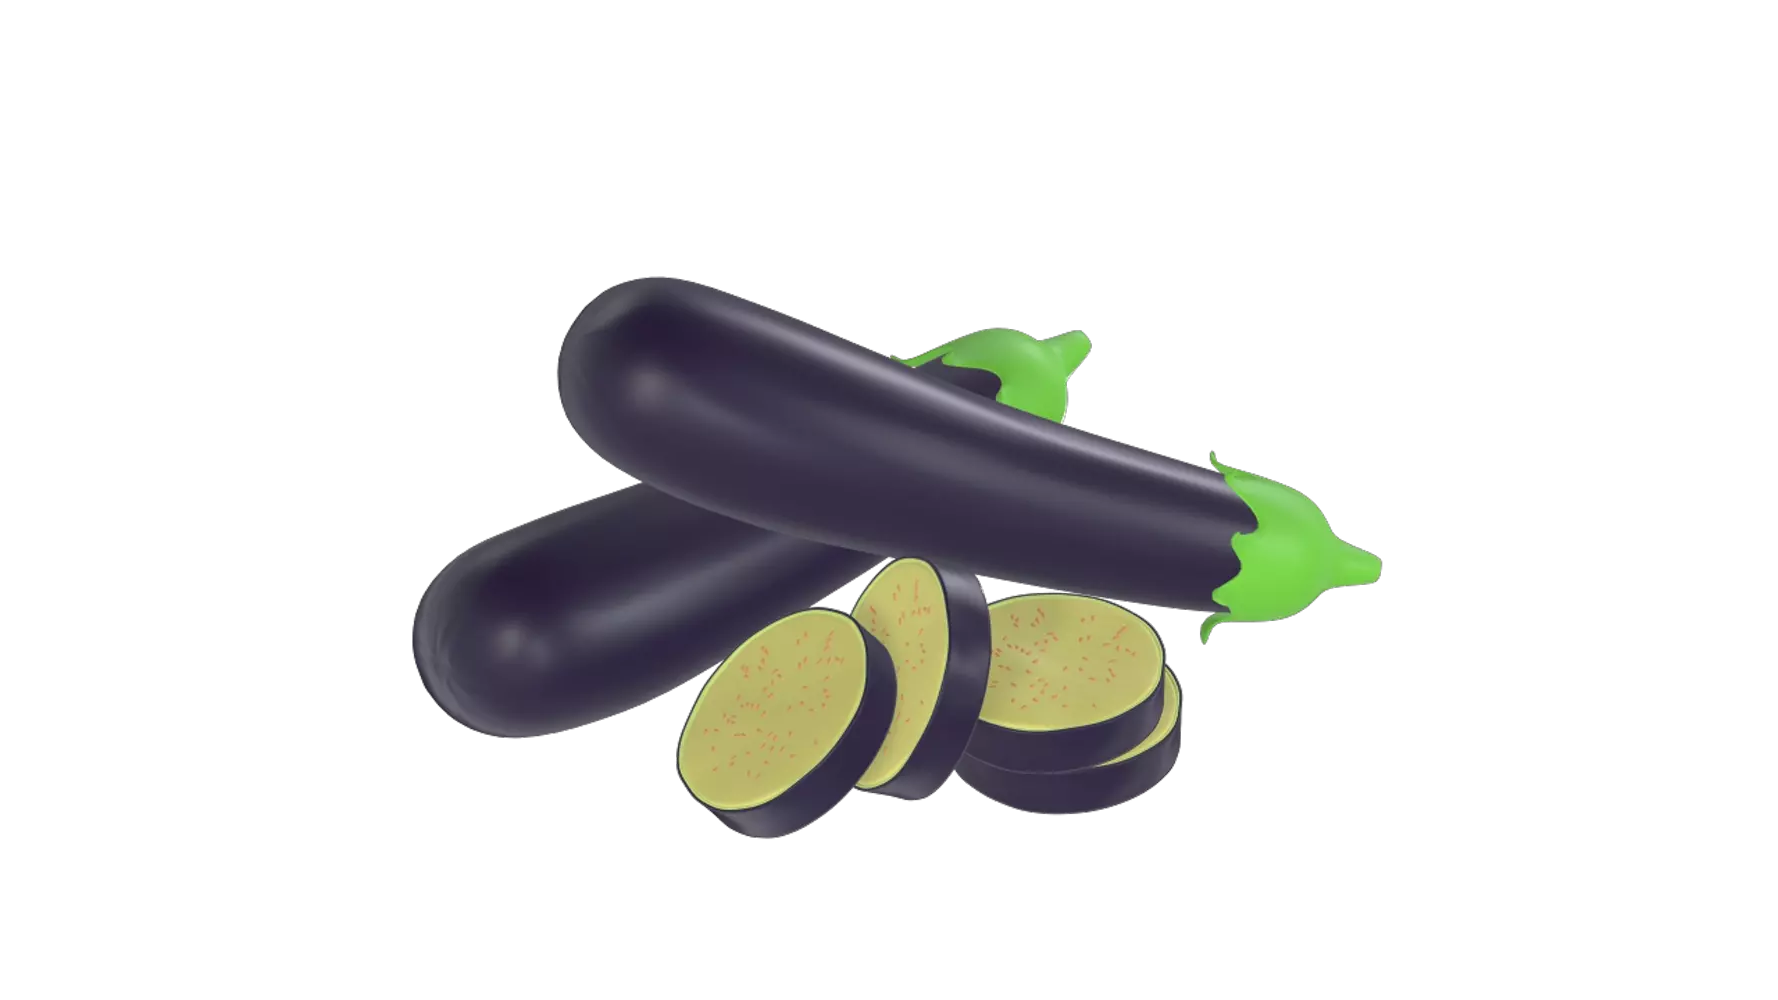 Eggplant 3d model--9f687bdc-2632-478b-89fa-3de125076e70